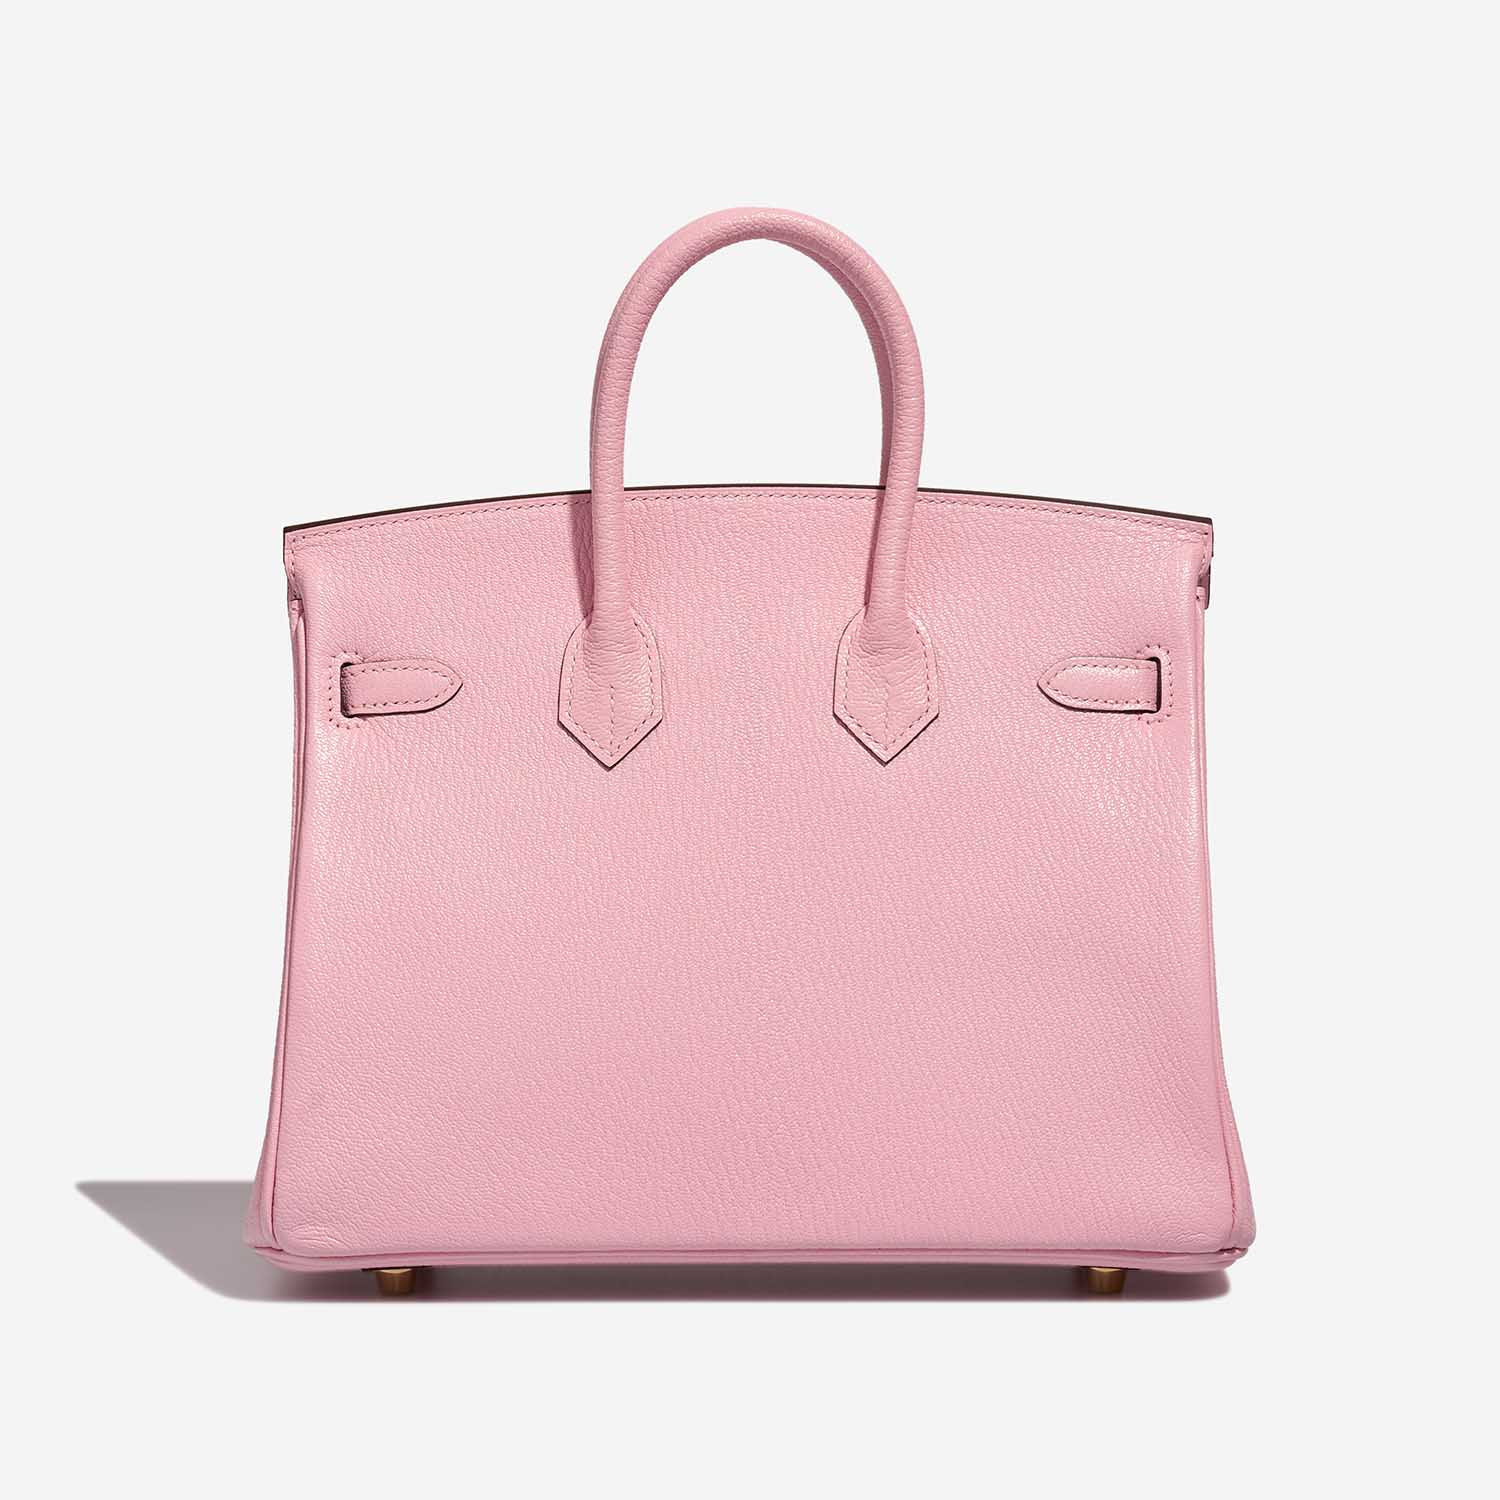 Hermès Birkin 25 RoseSakura Back | Verkaufen Sie Ihre Designertasche auf Saclab.com